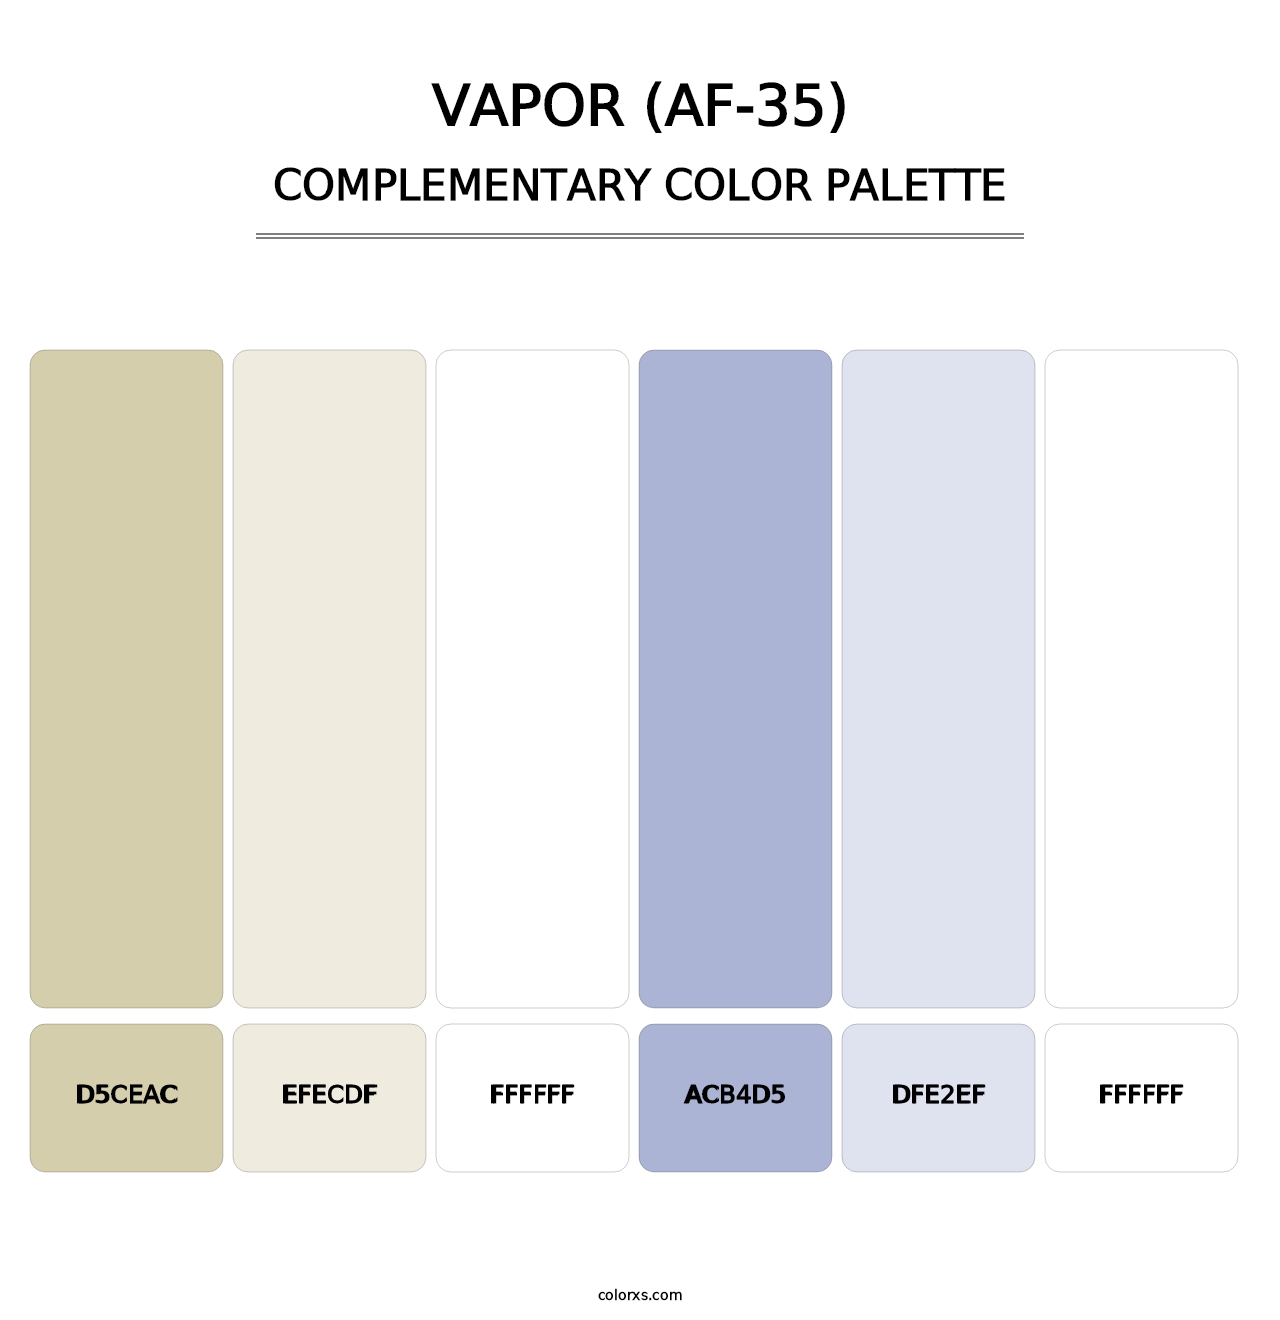 Vapor (AF-35) - Complementary Color Palette